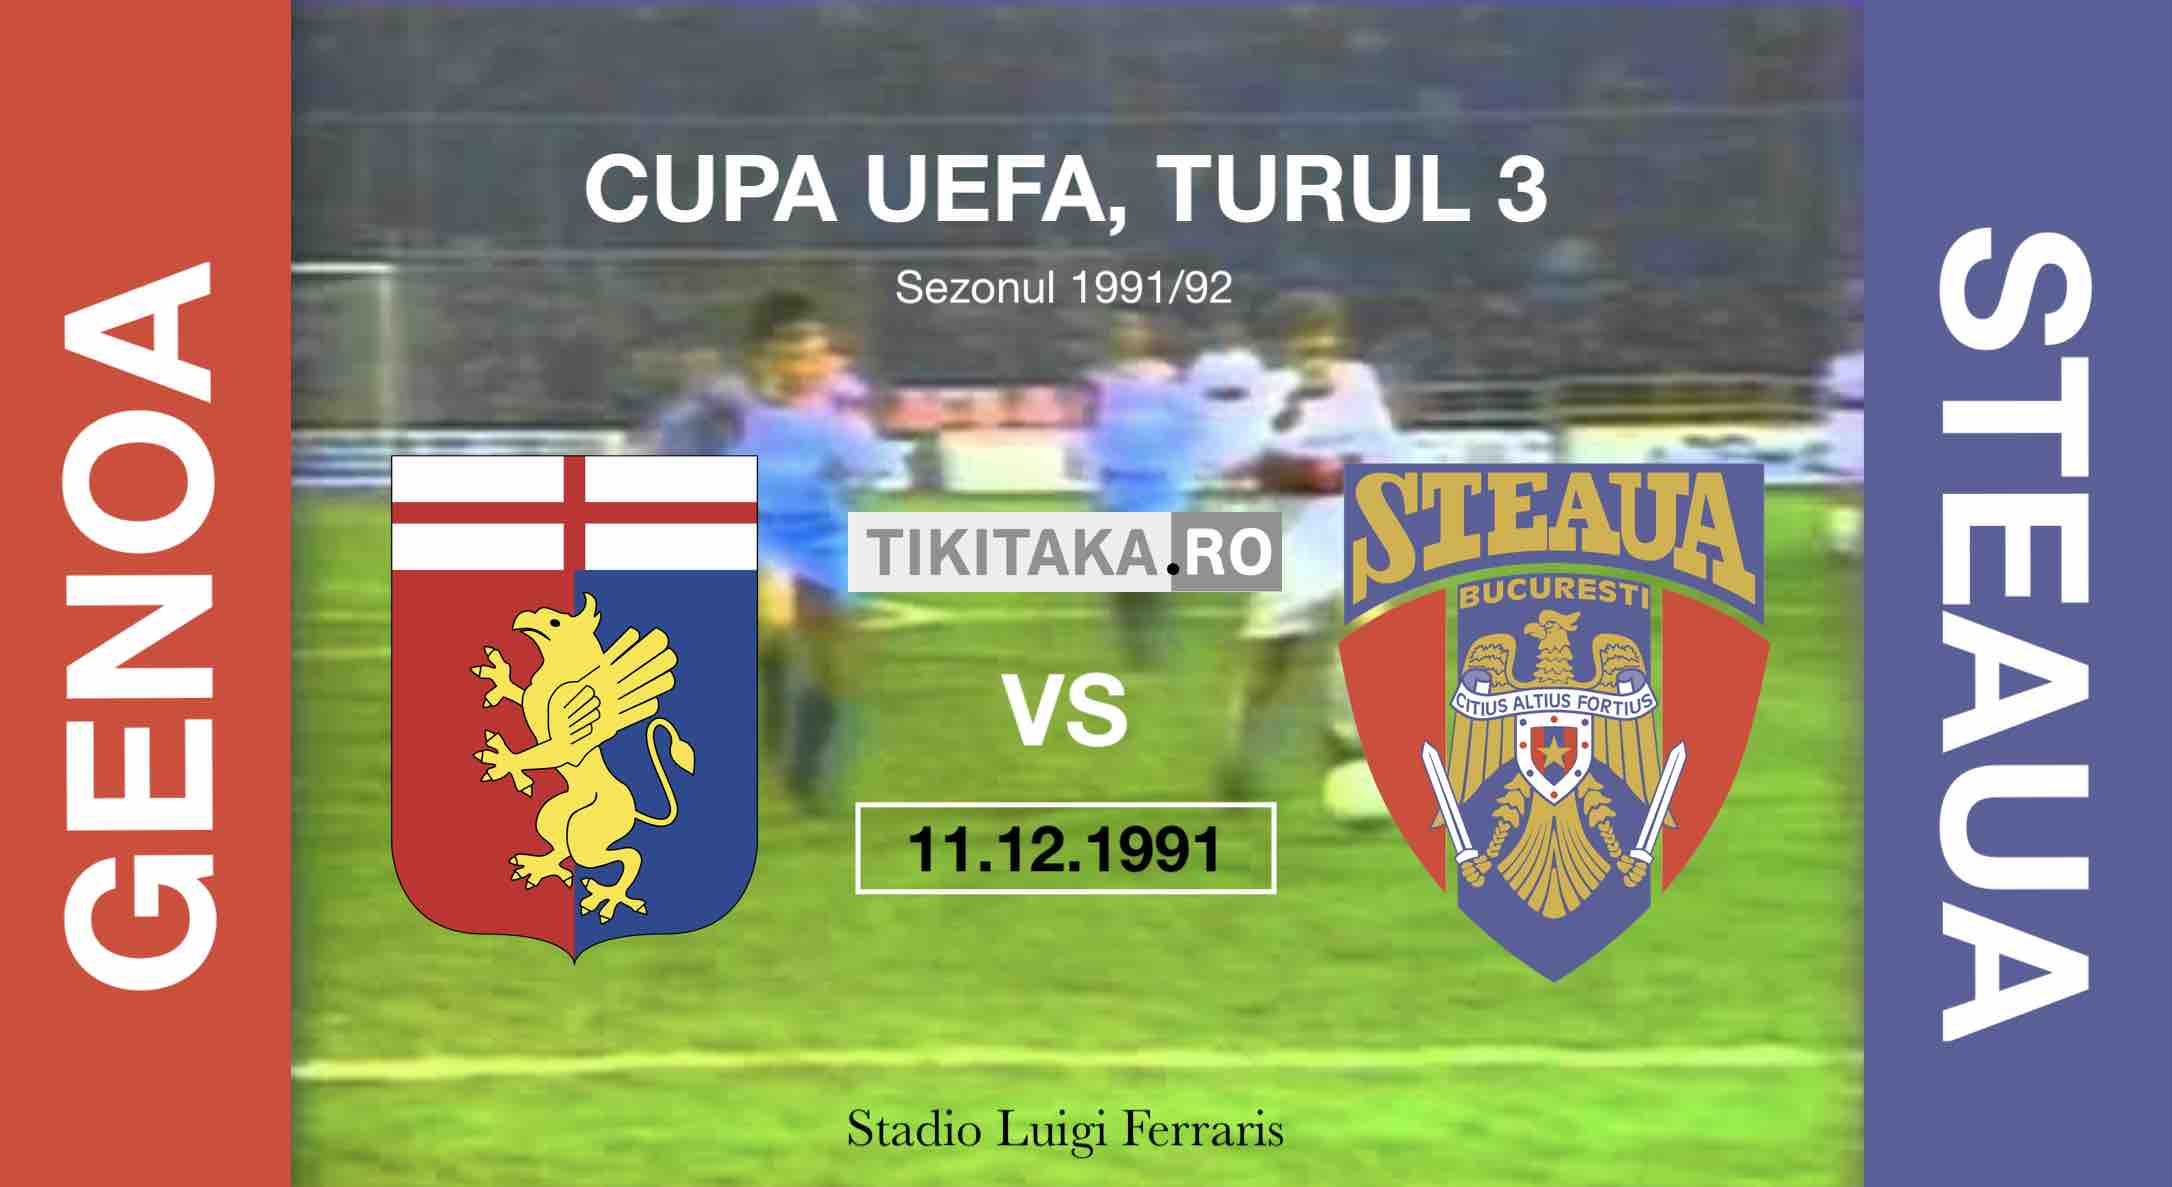 Genoa 1-0 Steaua 1991